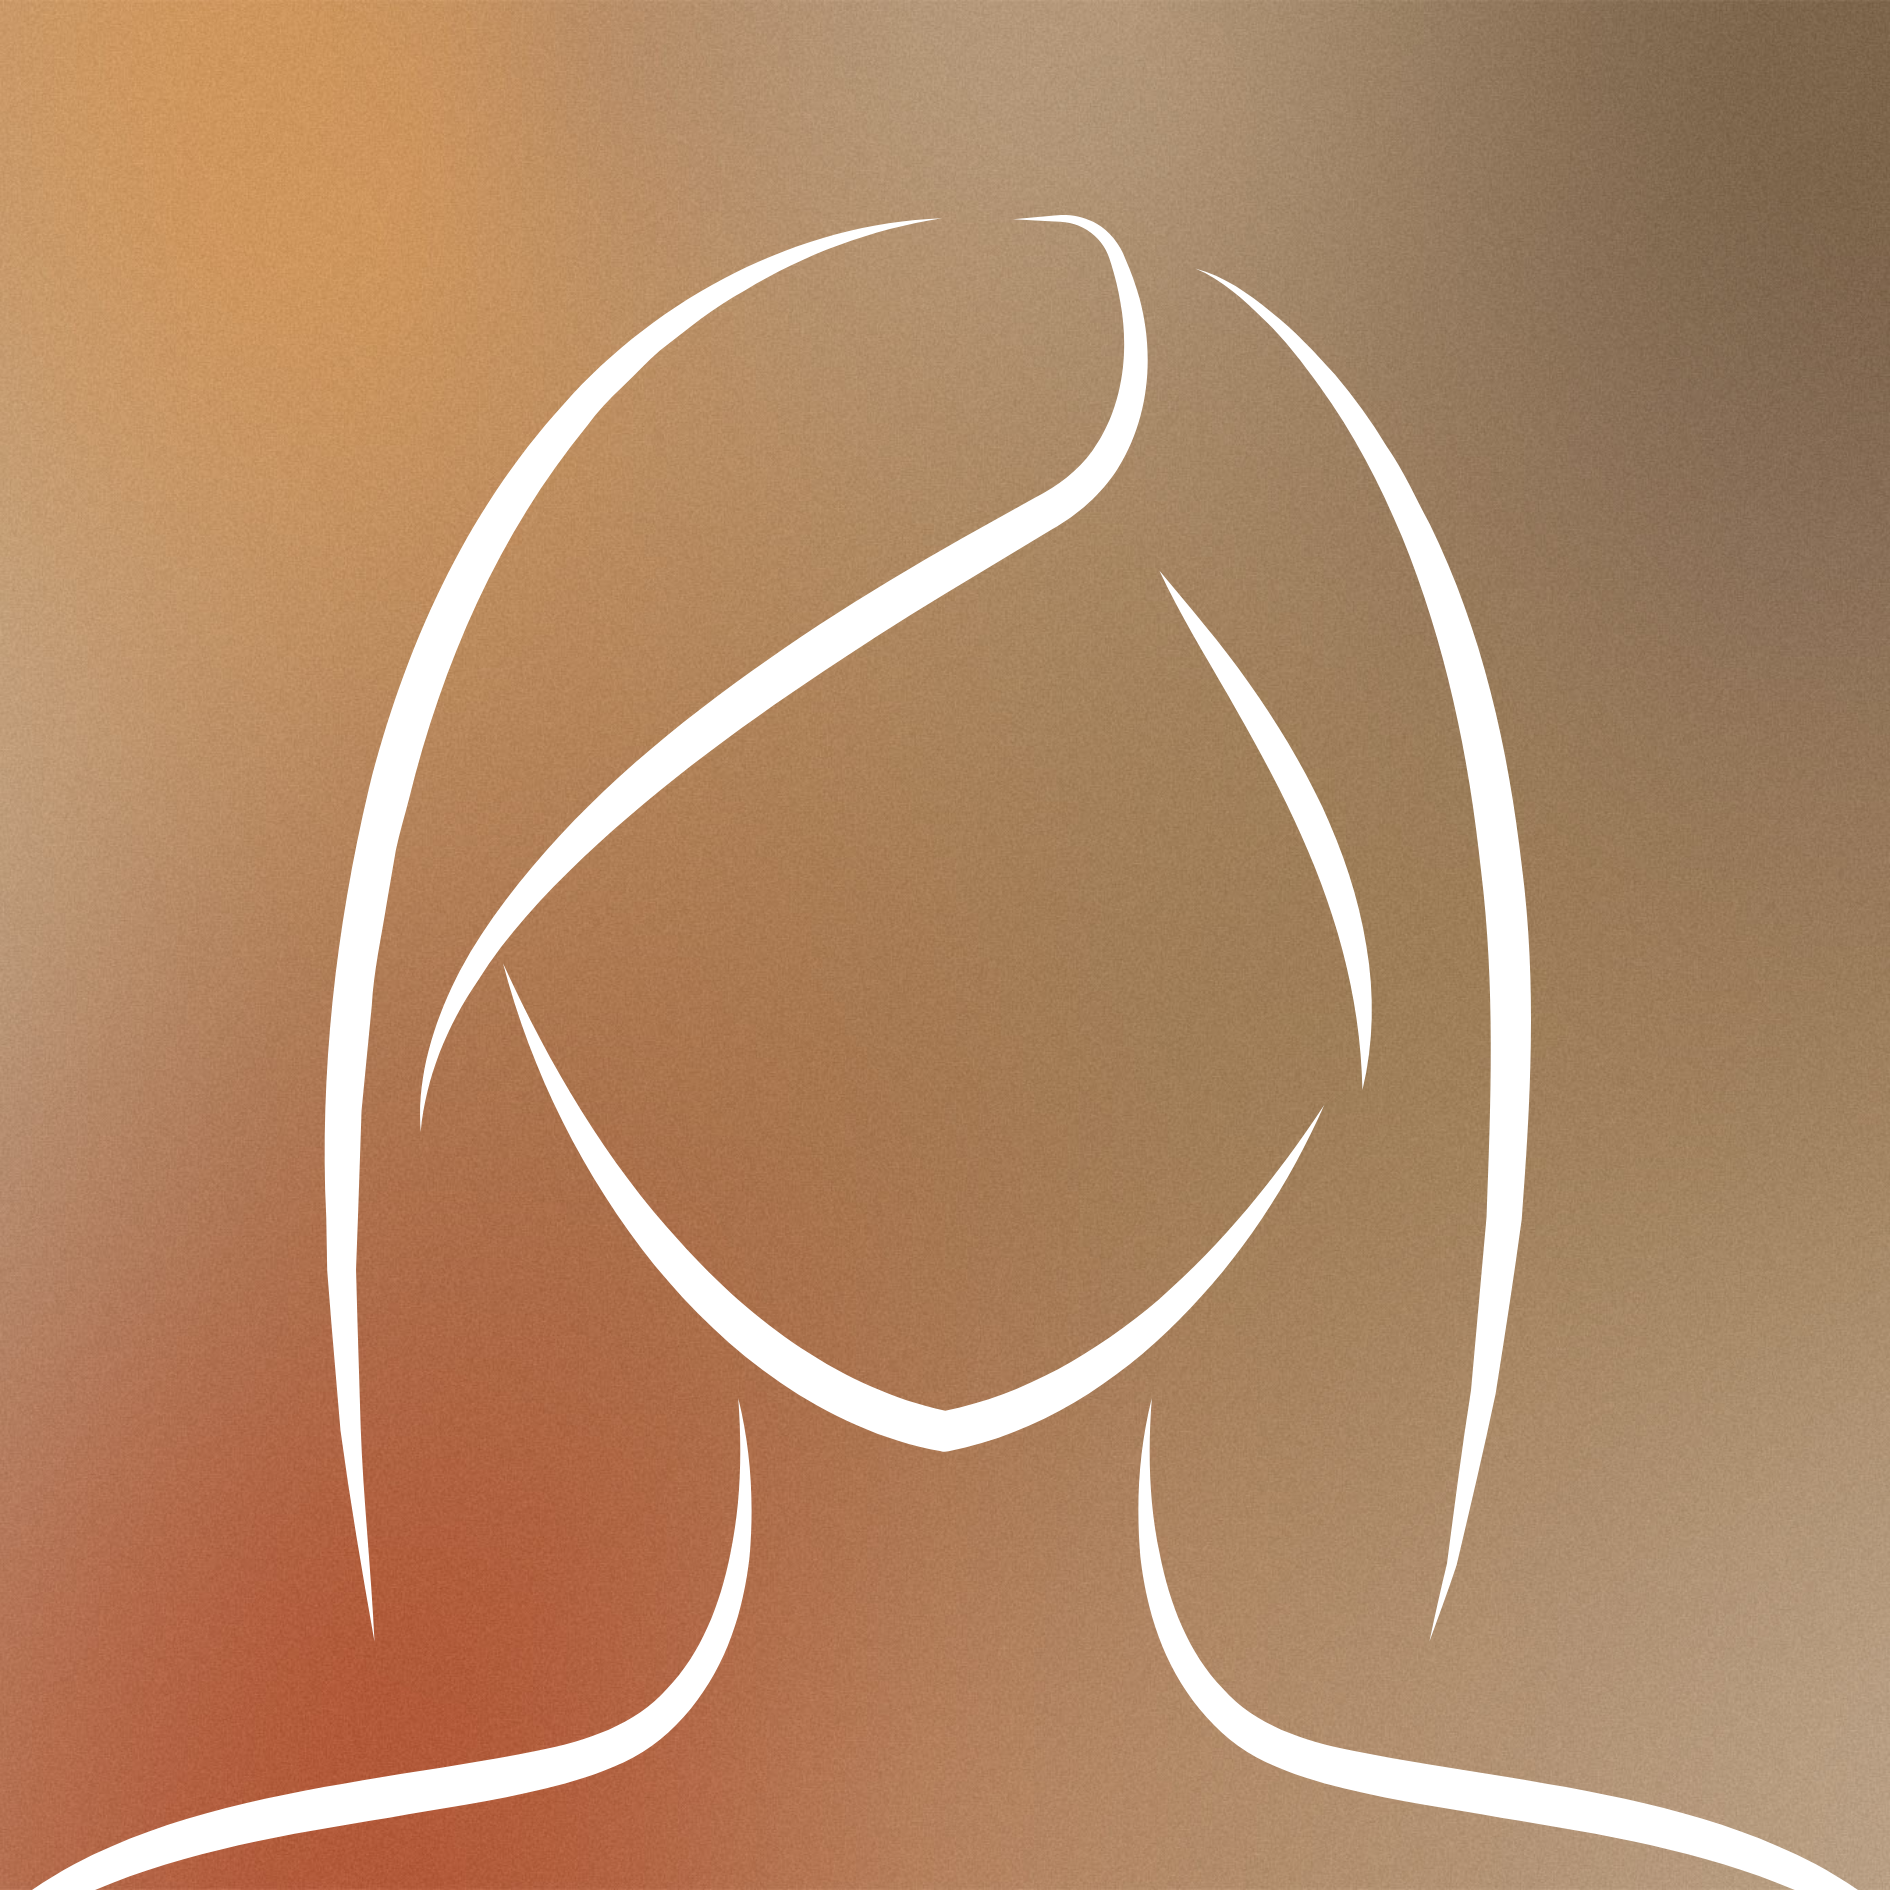 Stilisierte Abbildung eines Personen-Silhouettenprofils mit farbigem Verlaufshintergrund.